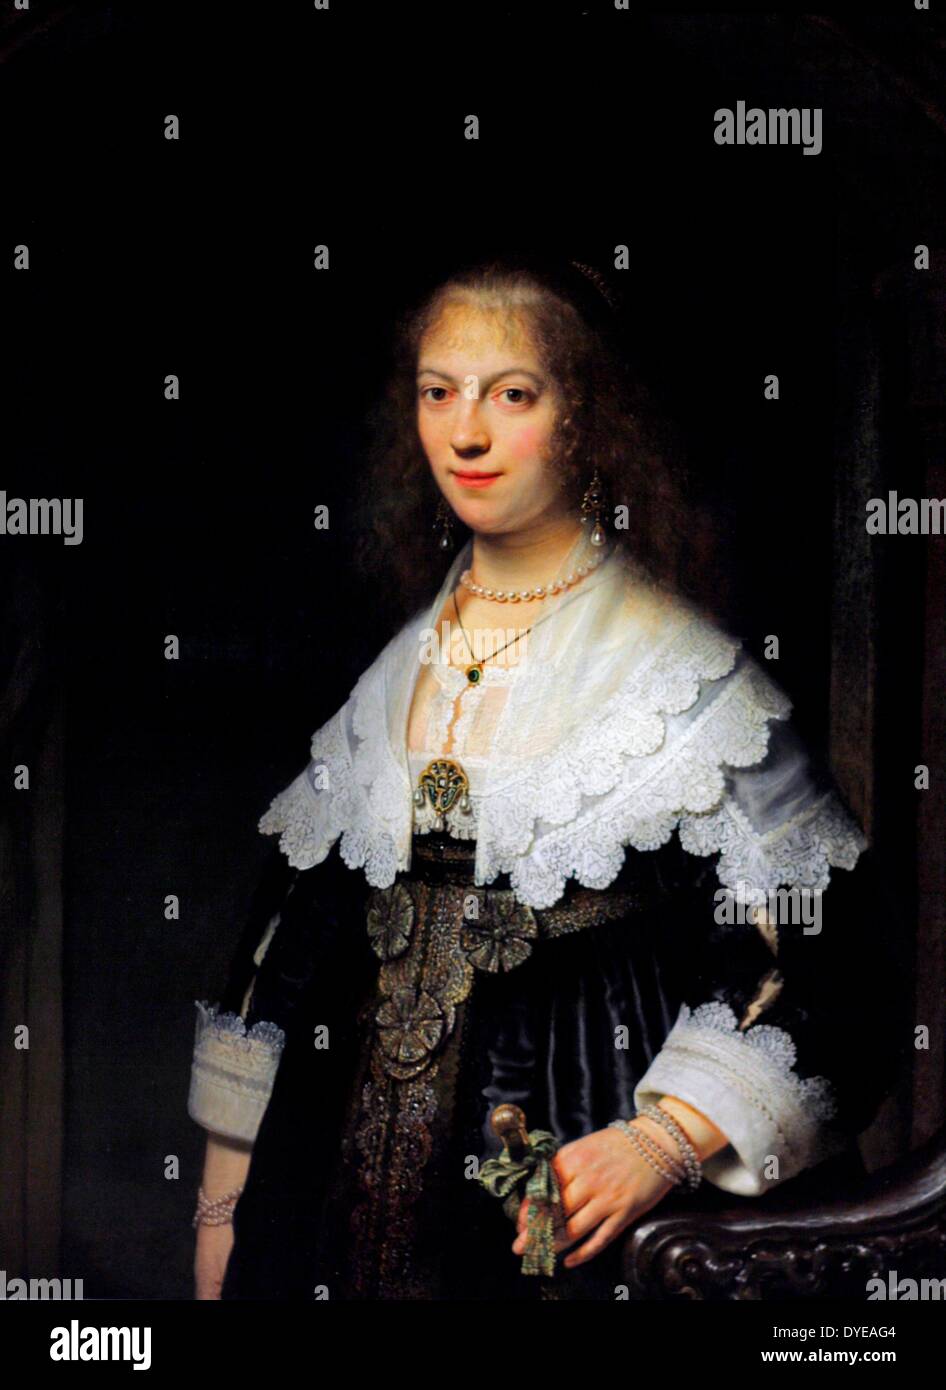 Ritratto di una donna, eventualmente Viaggio di Maria da Rembrandt Harmensz van Rijn (1606-1669) olio su pannello, 1639. Il giovane scrittore è assunto da Maria viaggio, la figlia di un ricco mercante di Amsterdam. Essa visualizza la sua ricchezza con orgoglio. Il suo vestito è rifinito con biancheria bianca, così fine, è quasi trasparente. Ella lo sport una fortuna in perle e nella mano sinistra ha casualmente tiene il manico di una ventola di piegatura. Nel 1639 questo era ancora un raro e costoso accessorio. Foto Stock